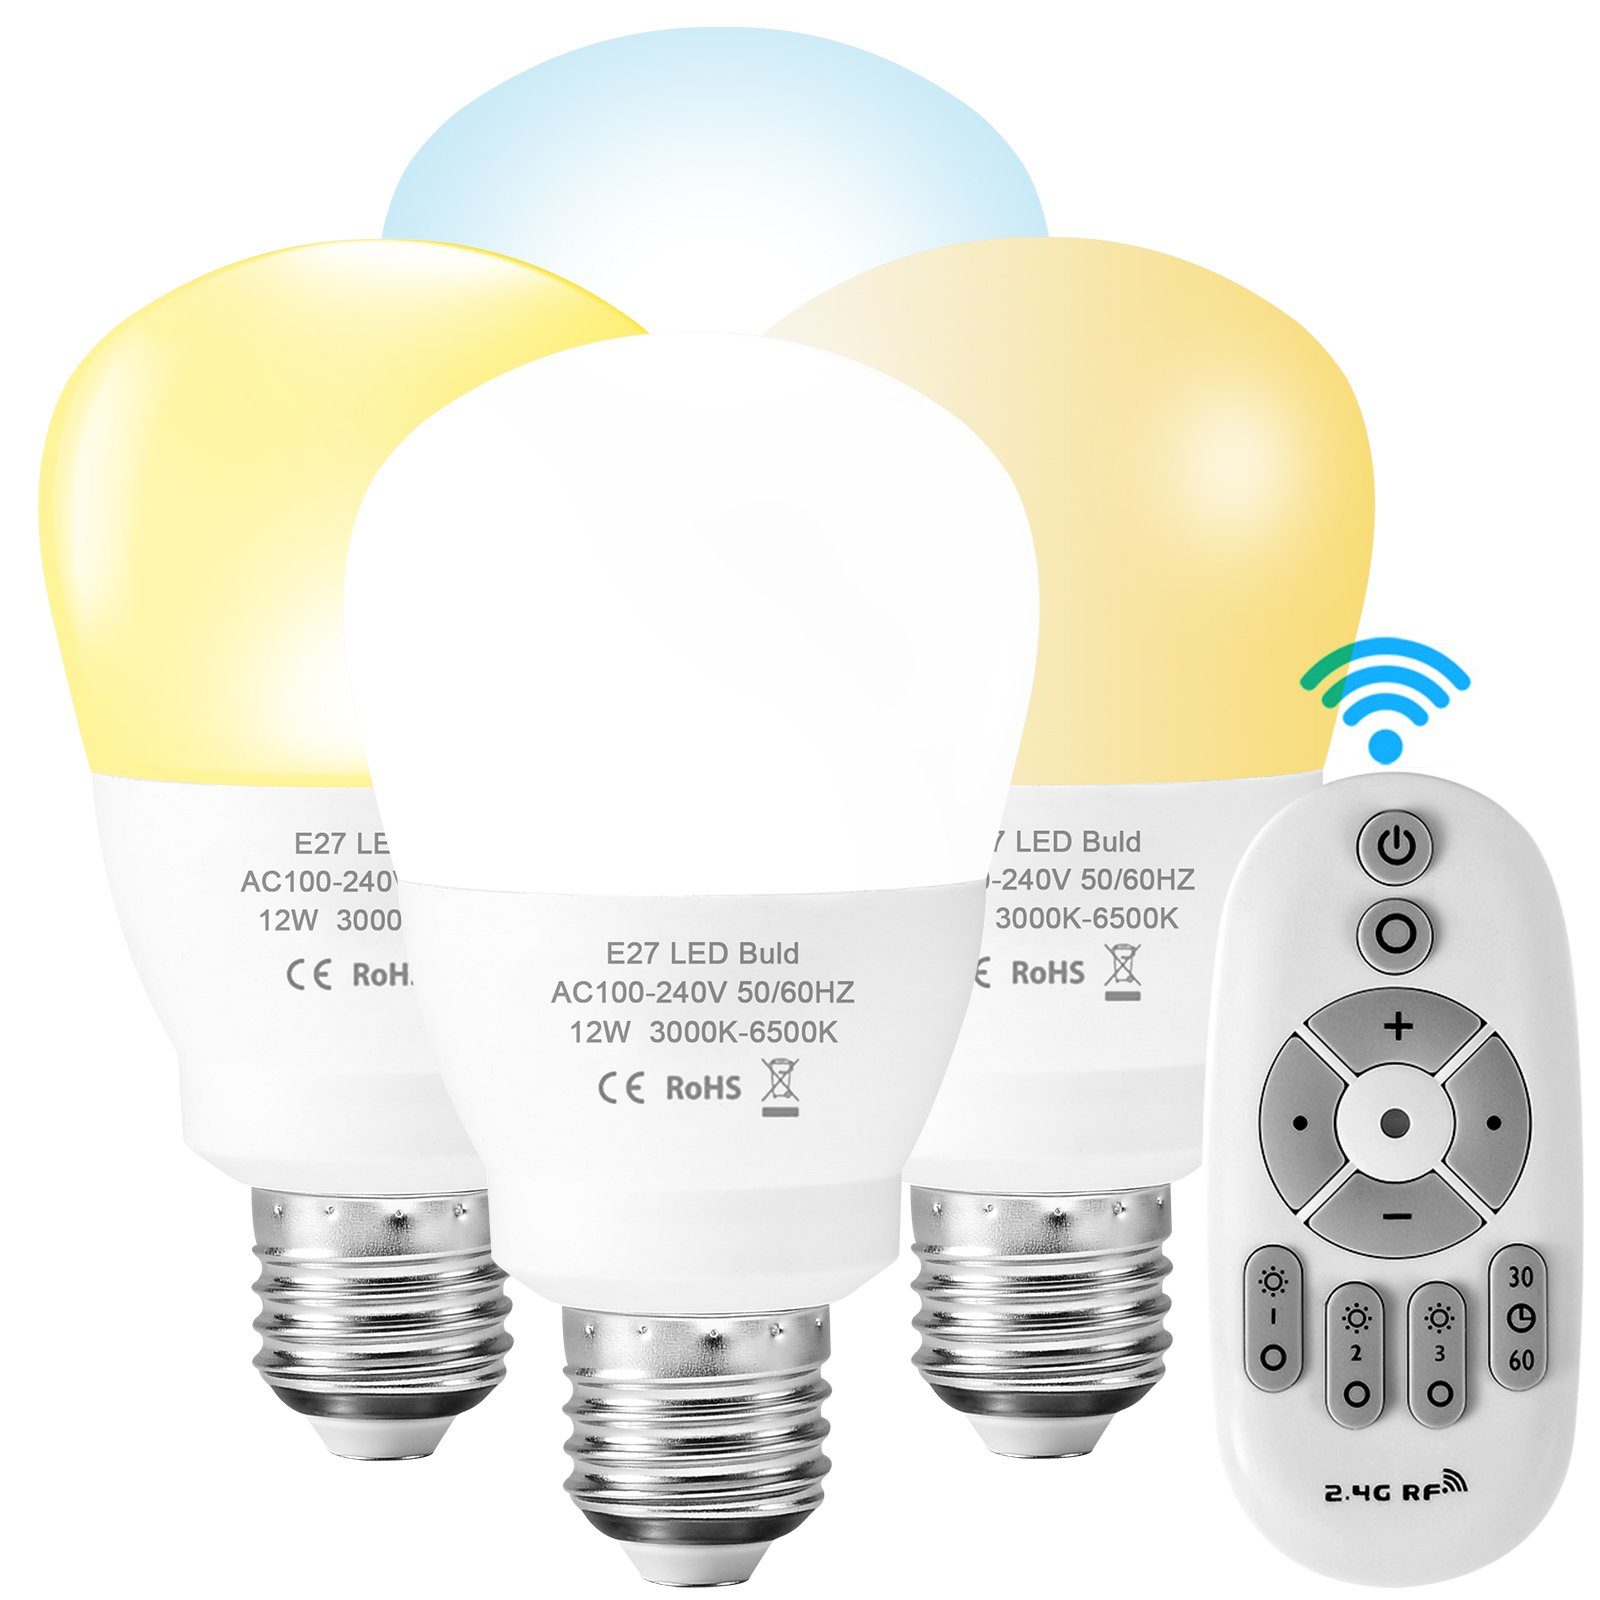 Rosnek LED-Leuchtmittel E27, 12W, 900lm, dimmbar, für Schlafzimmer  Wohnzimmer, E27, 1 St., Kaltweiß + Warmweiß, 2.4G RF-Fernbedienung, Timer